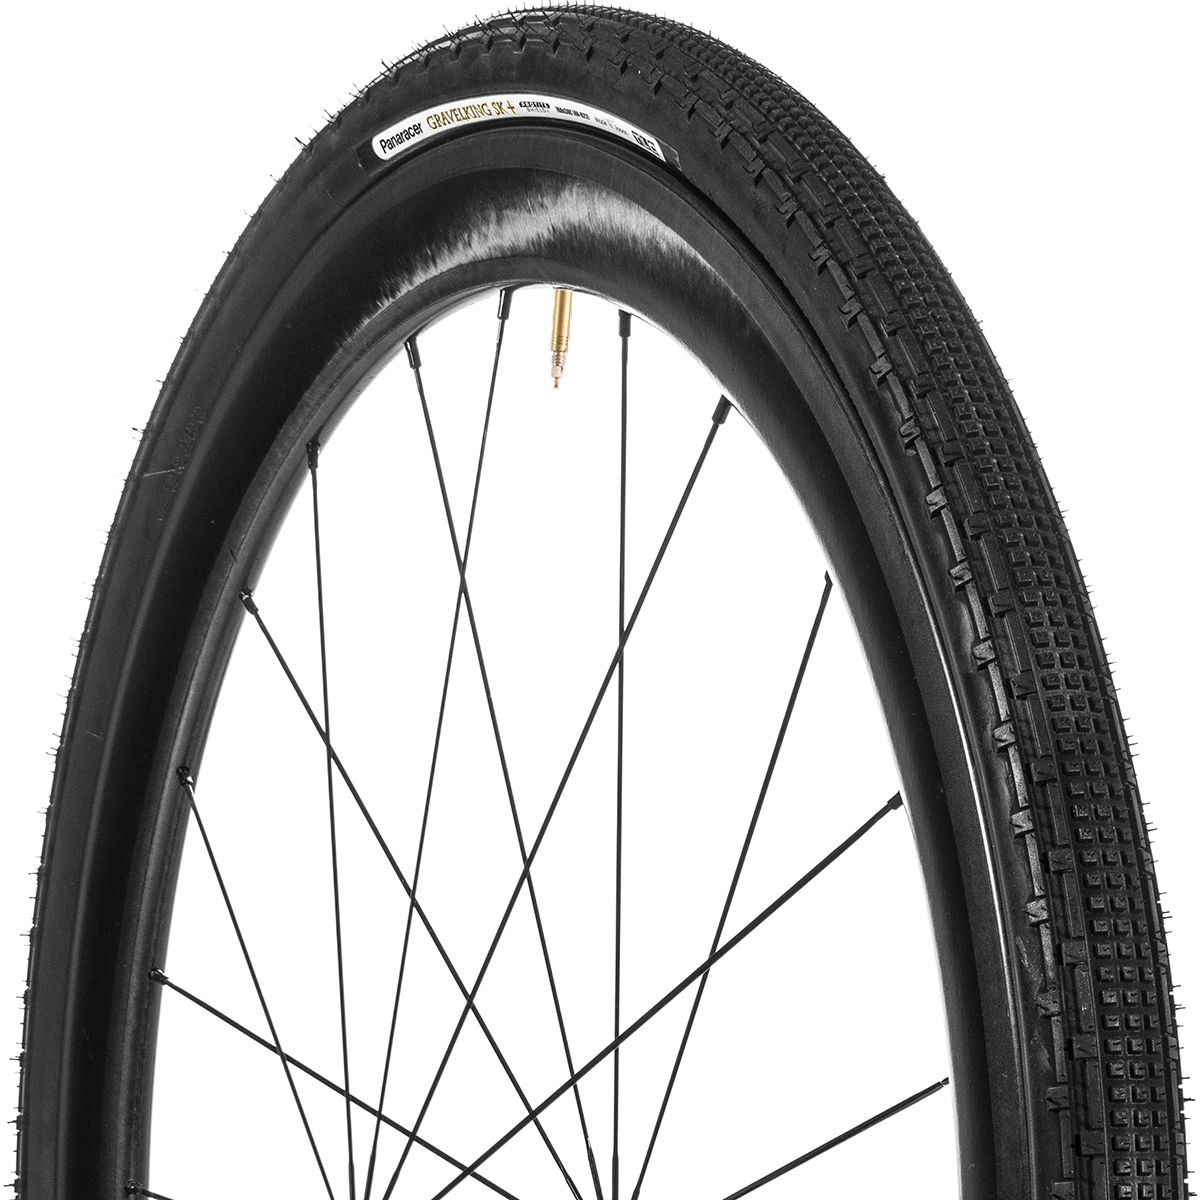 Panaracer Gravelking SK+ Tubeless Tire Black, 700x32